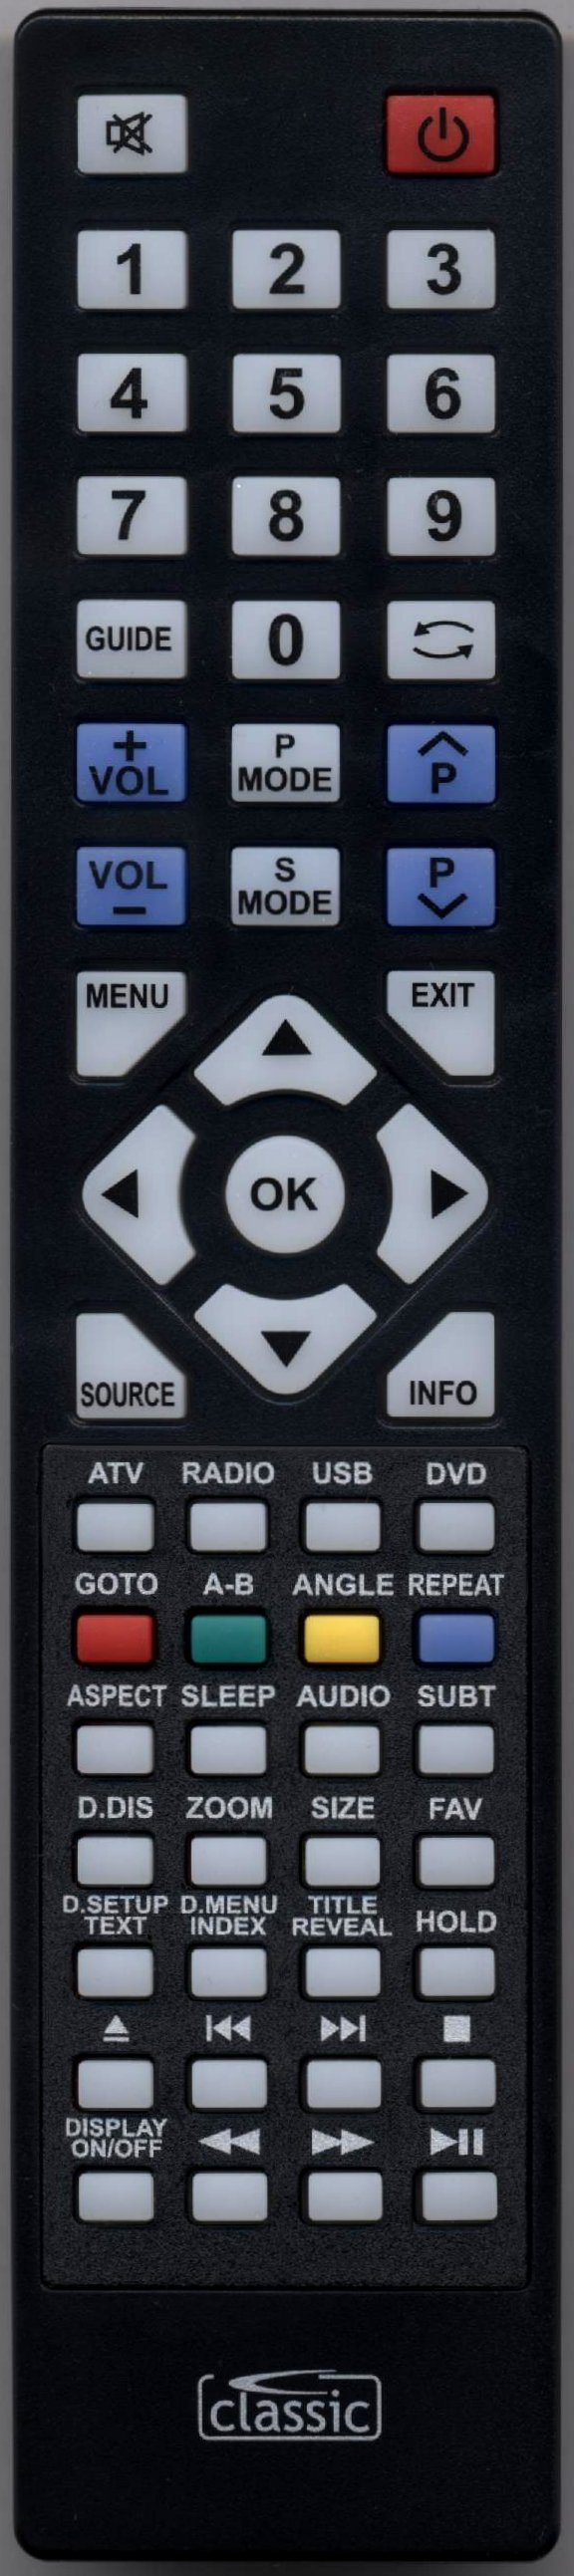 TECHNIKA LCD22-229 Remote Control Alternative